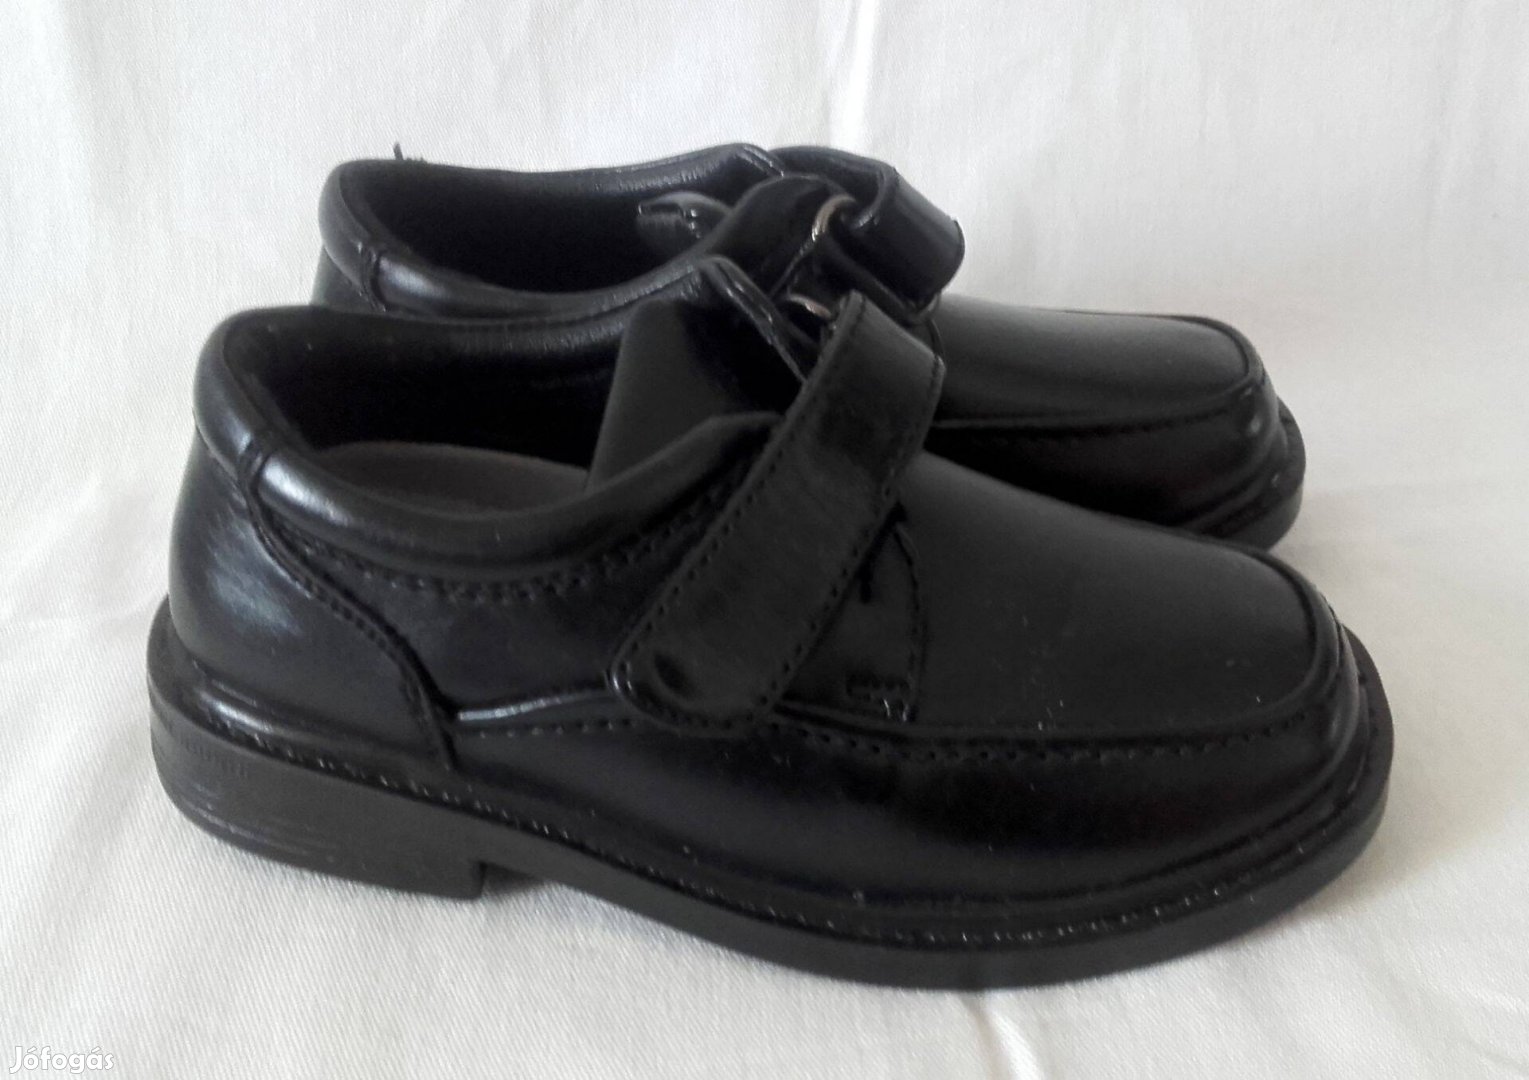 Kisfiú fekete cipő, új, Stafford, bth: 16 cm